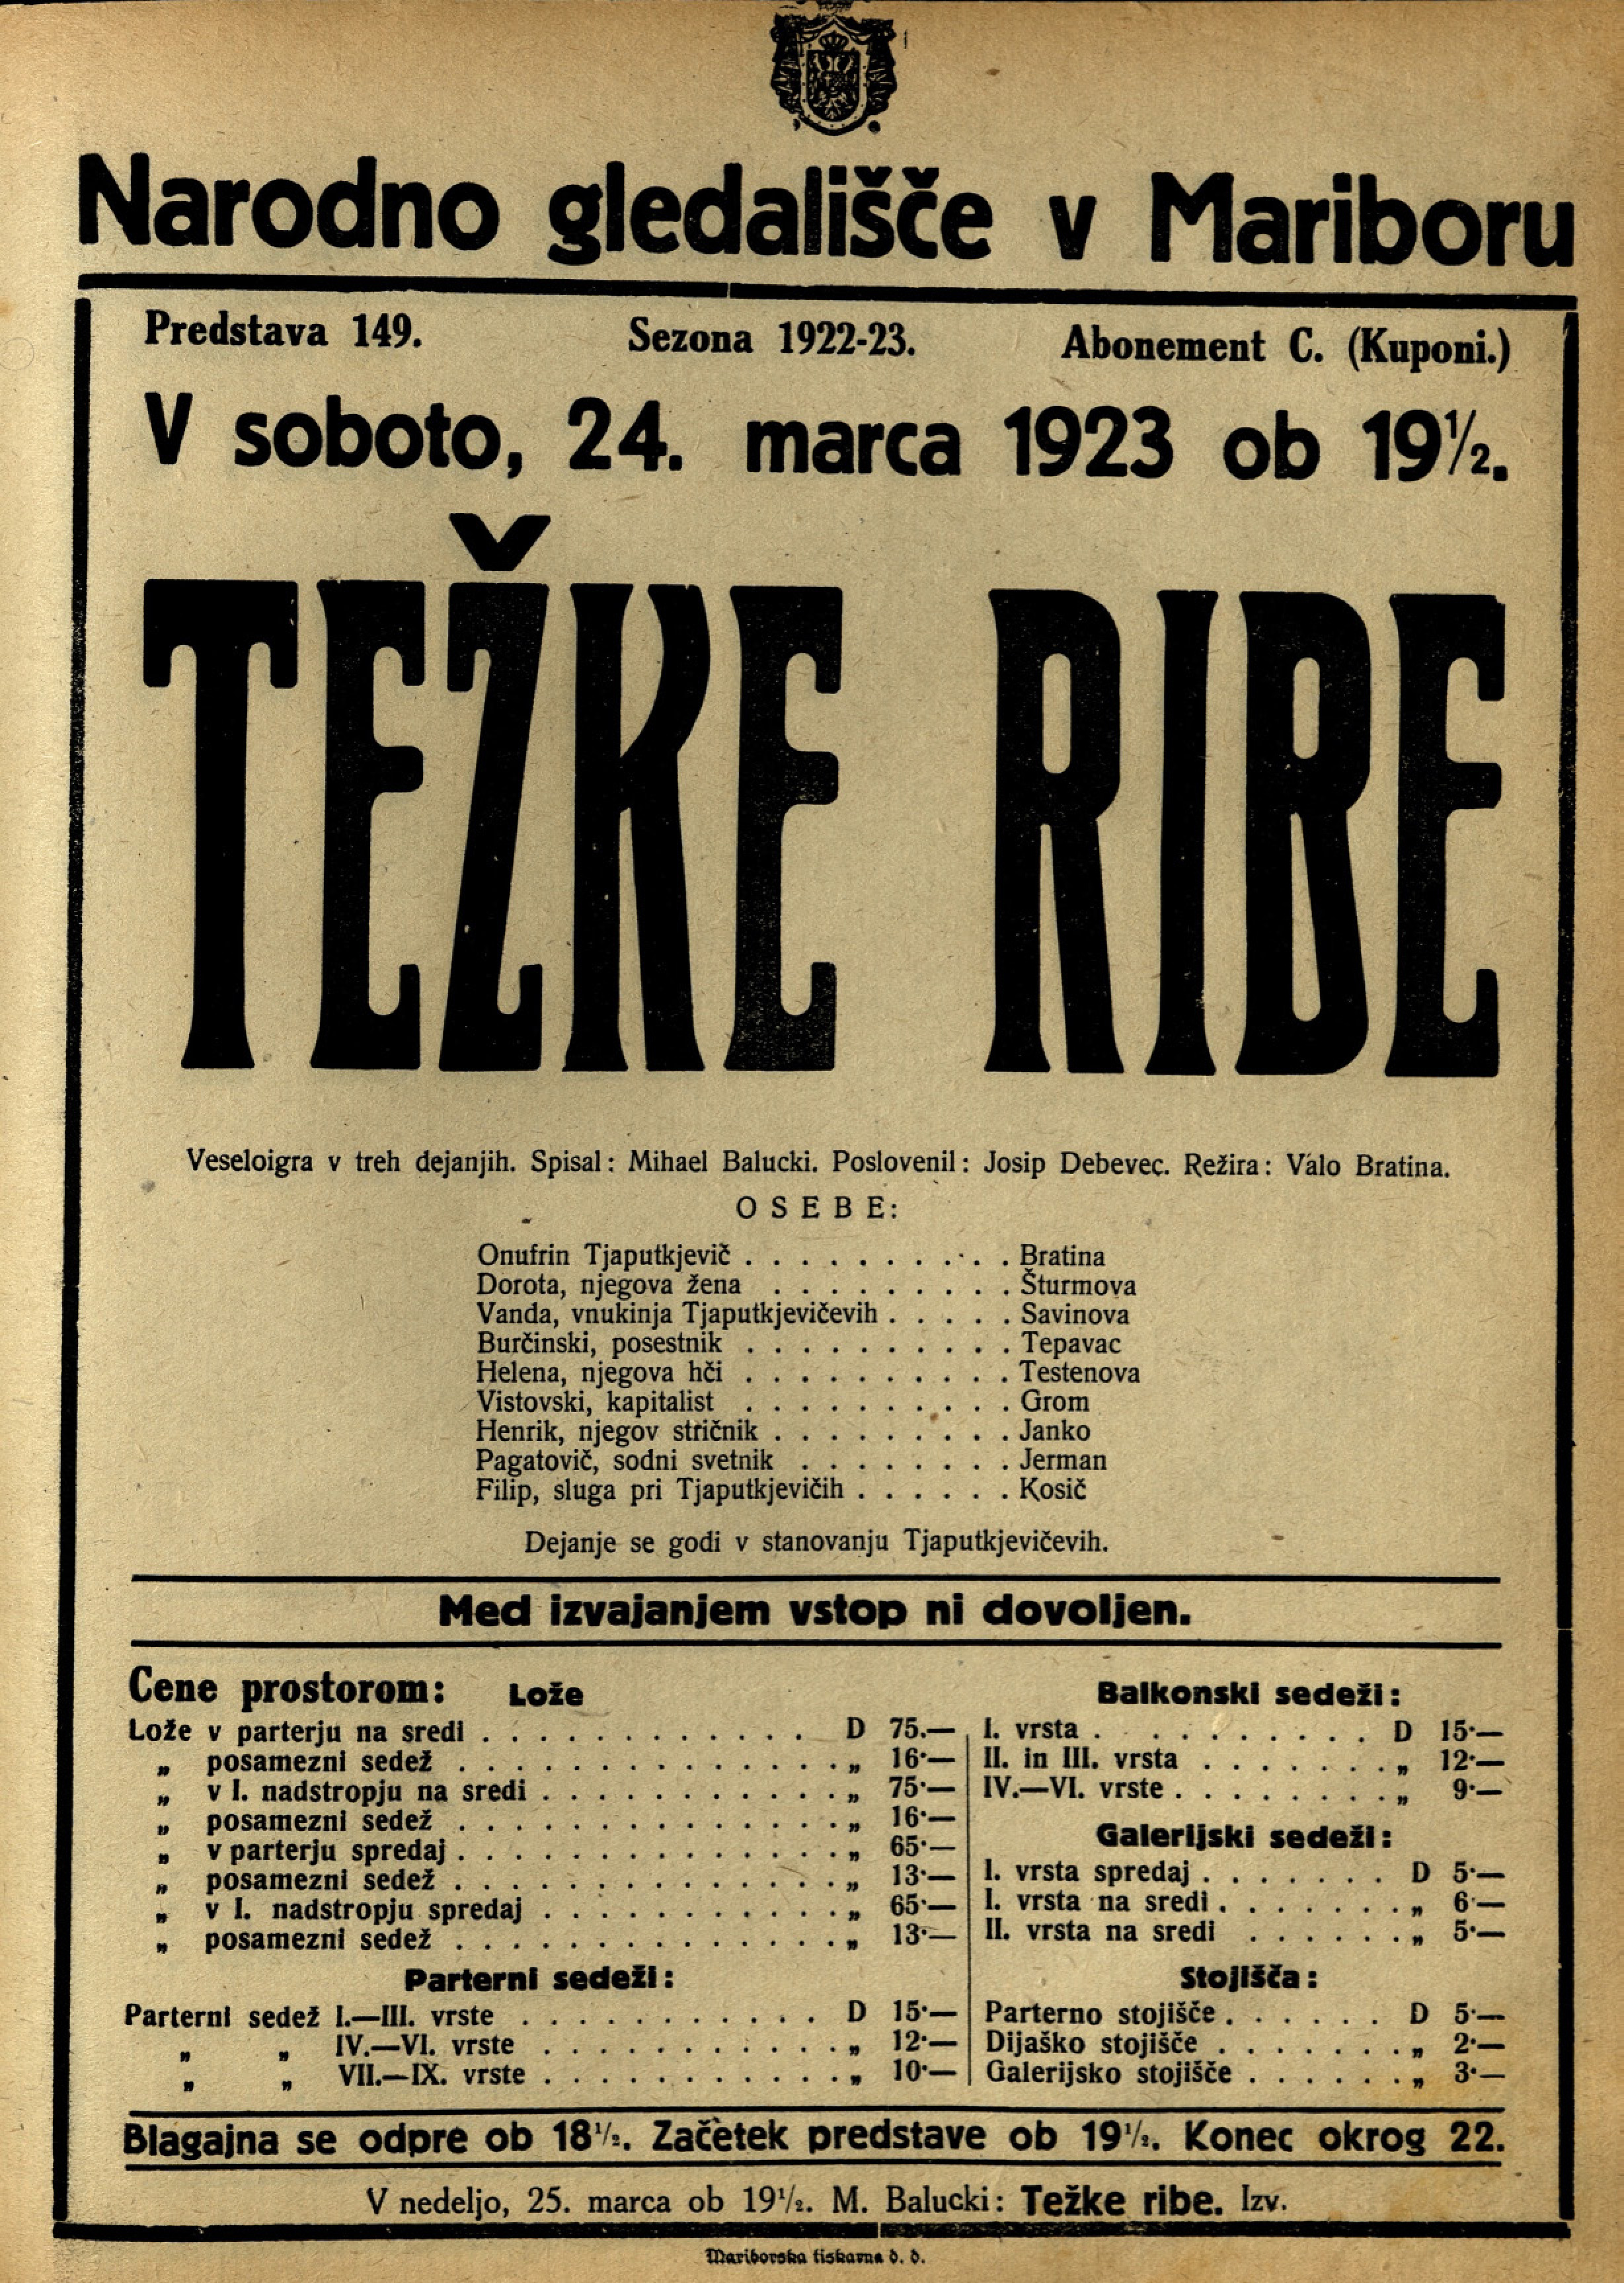 File:Plakat za Težke ribe v Narodnem gledališču v Mariboru marca 1923.jpg - Wikimedia Commons